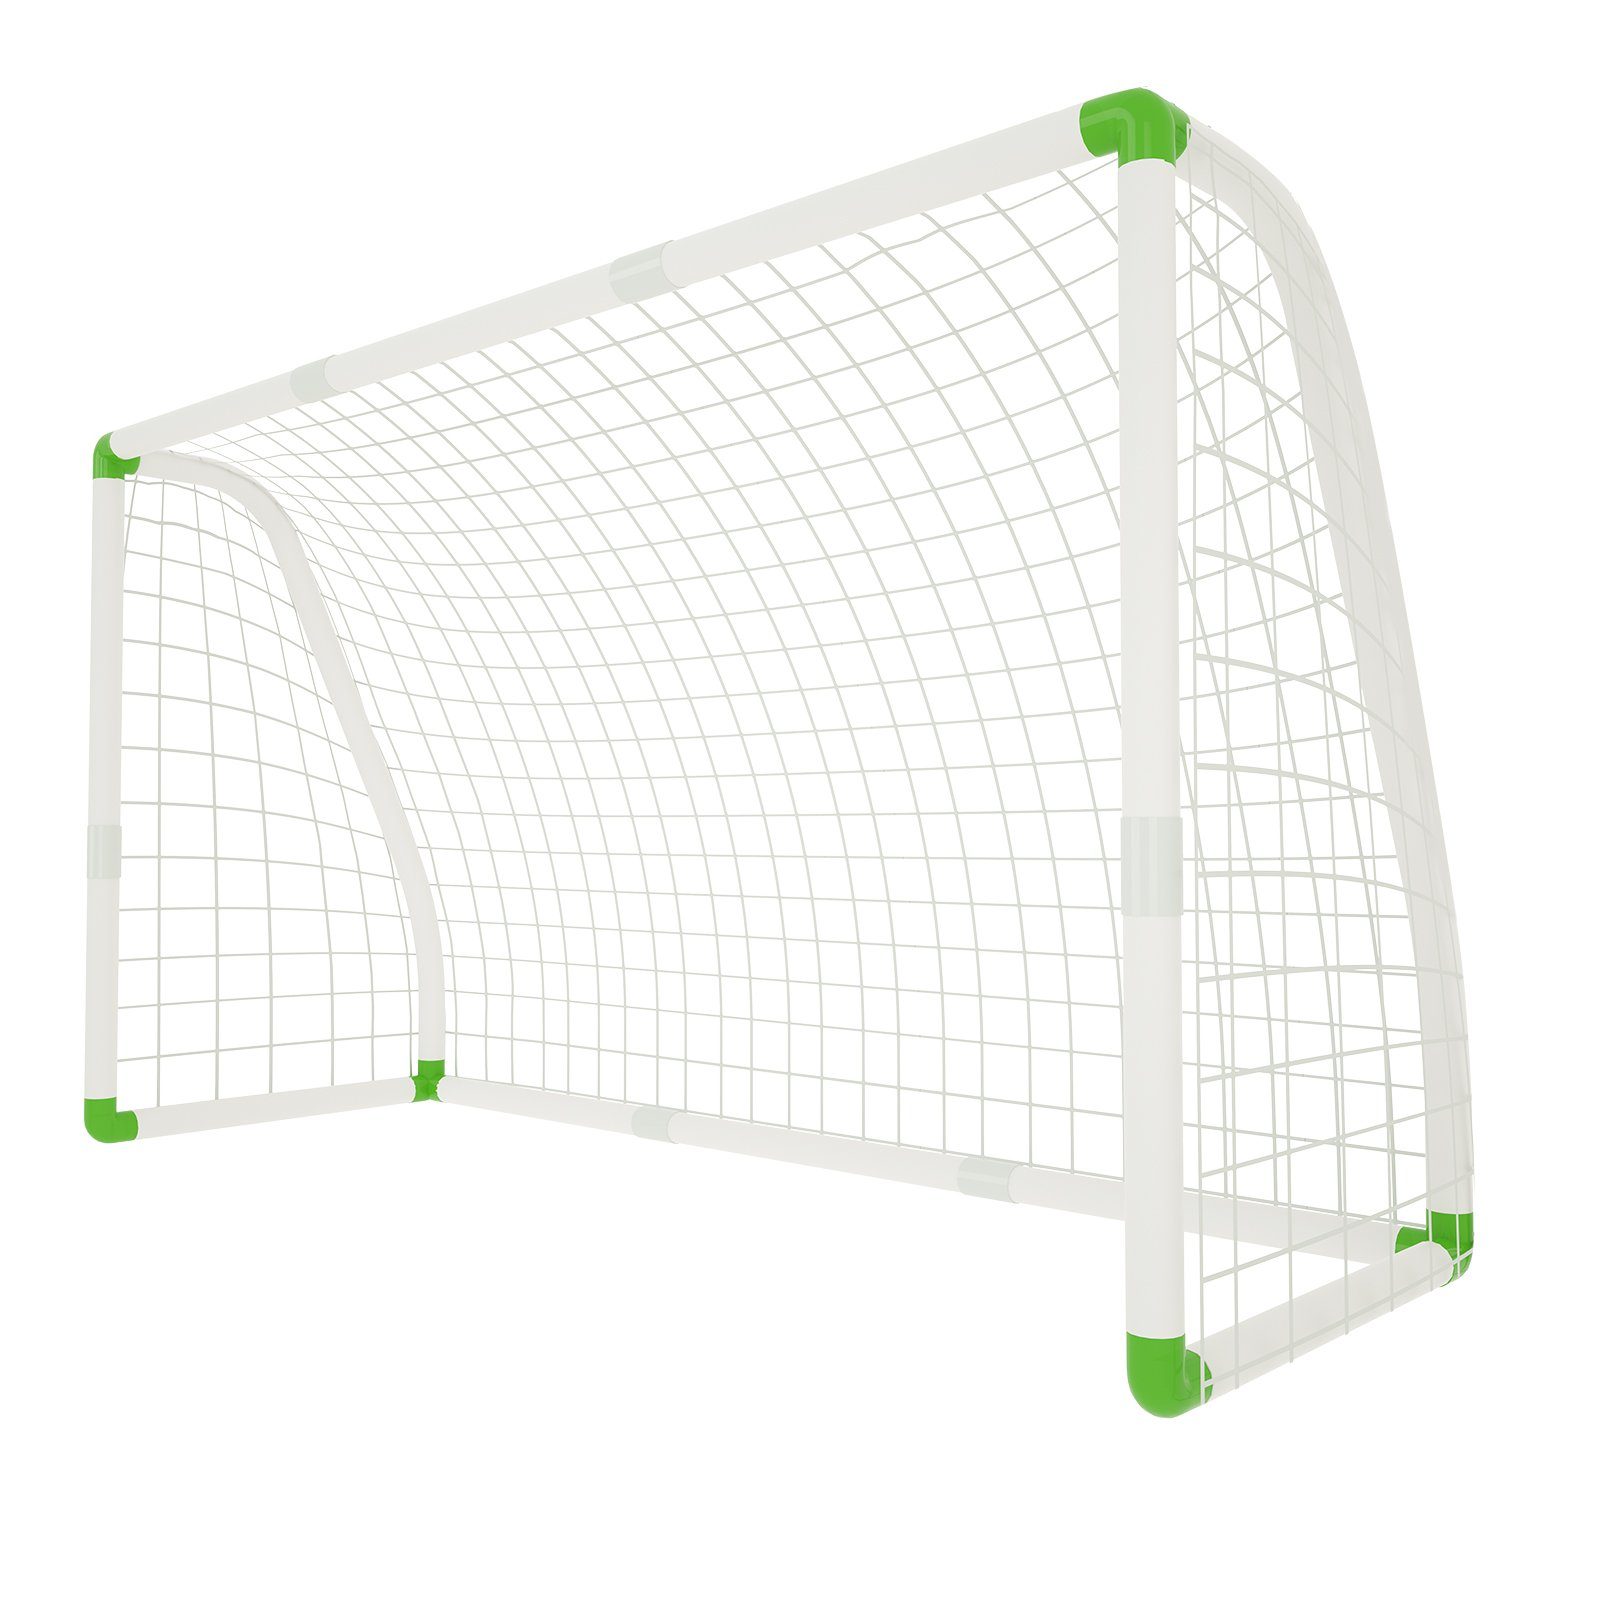 UISEBRT Fußballtor »PVC Fussballtor Kinder für Garten - das Beste Fußball  Tor bei jedem Wetter (1,8m x 1,2m)« online kaufen | OTTO